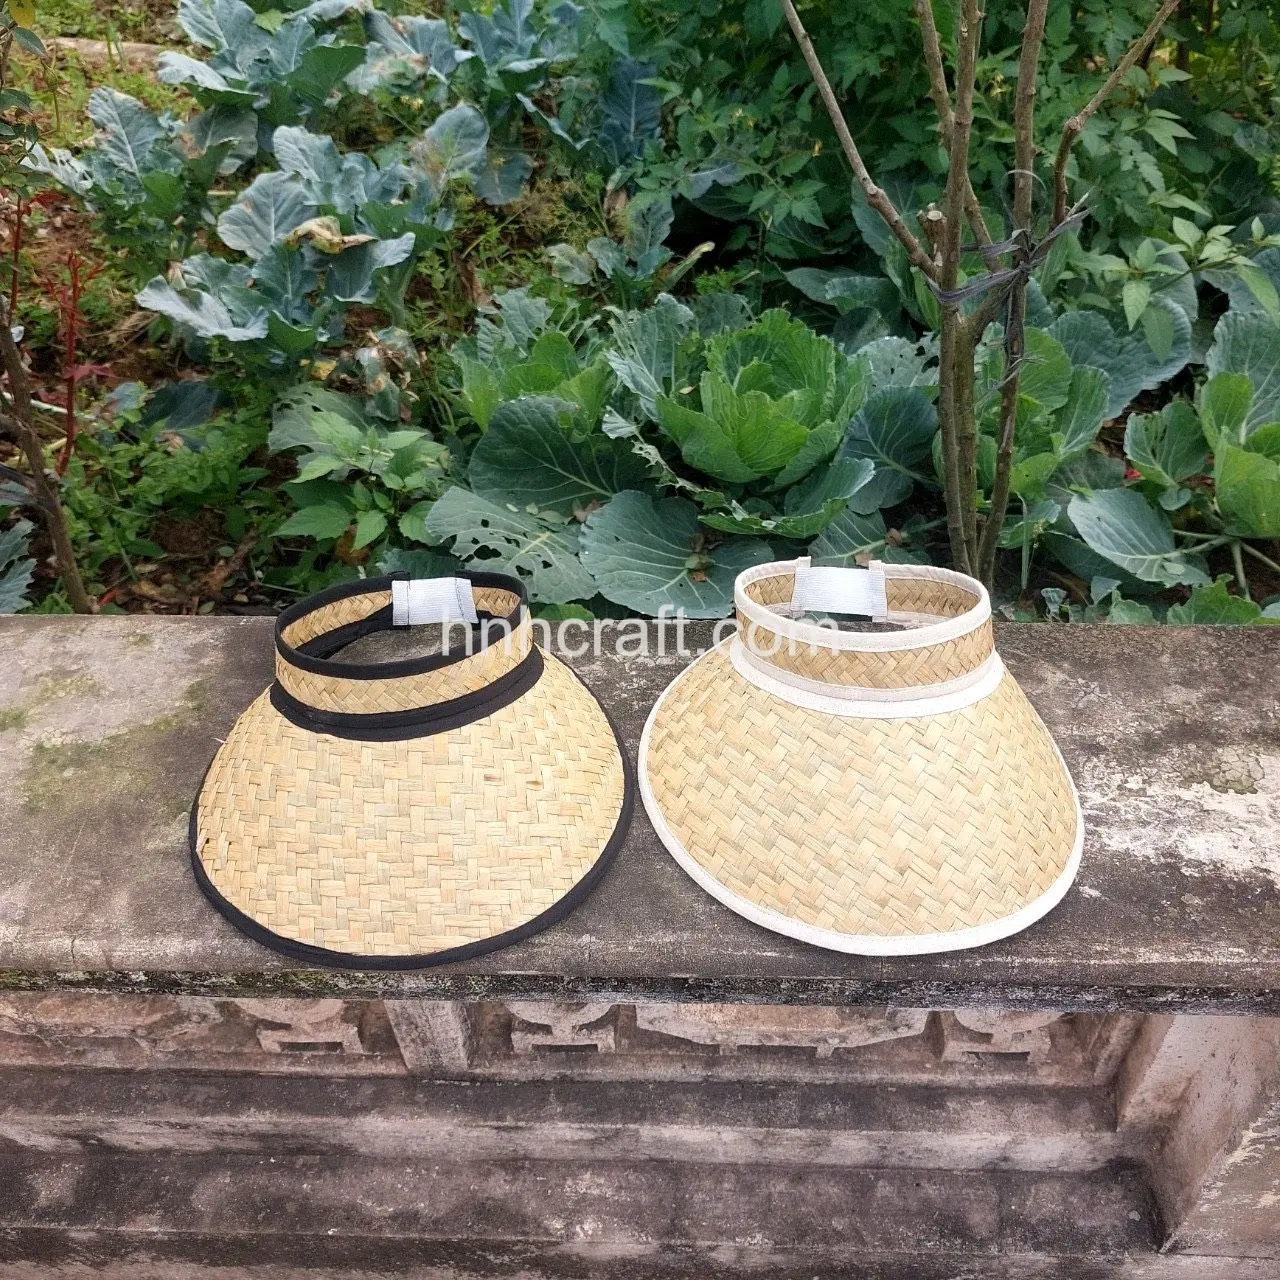 Low MOQ Hochwertige Visier Strohhut Sport hüte Seegras Palm blatt Hüte Sommerferien OEM Akzeptabel Made in Vietnam